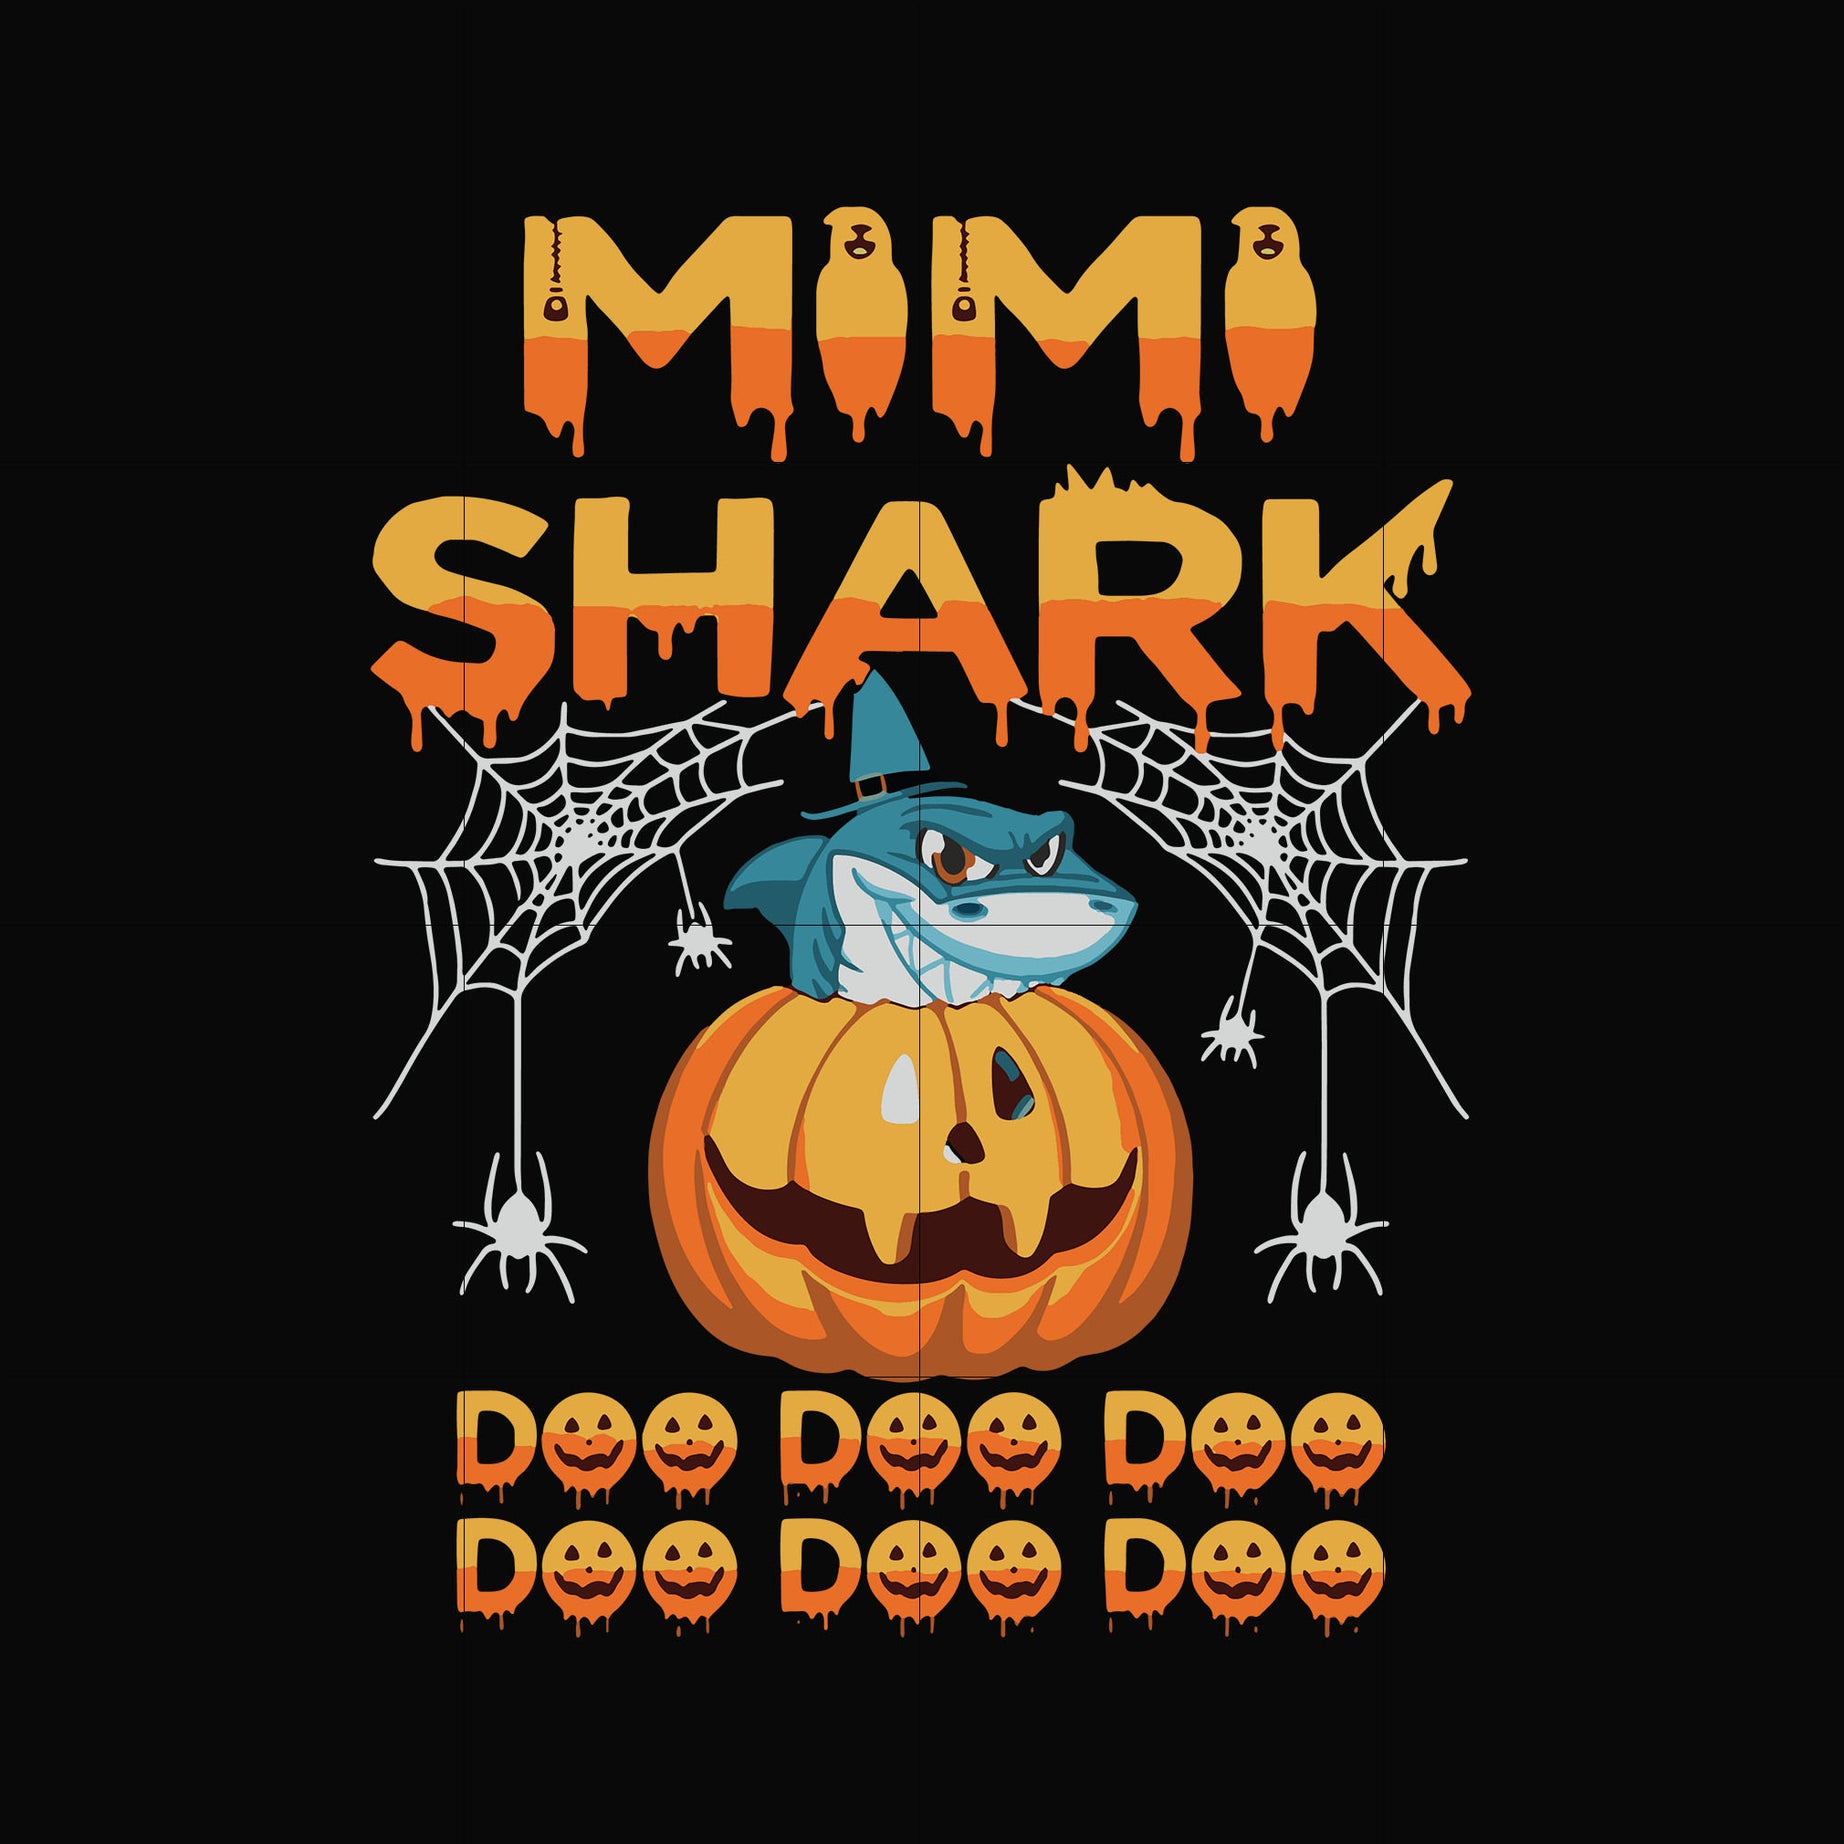 Mimi shark svg, png, dxf, eps digital file HLW0160